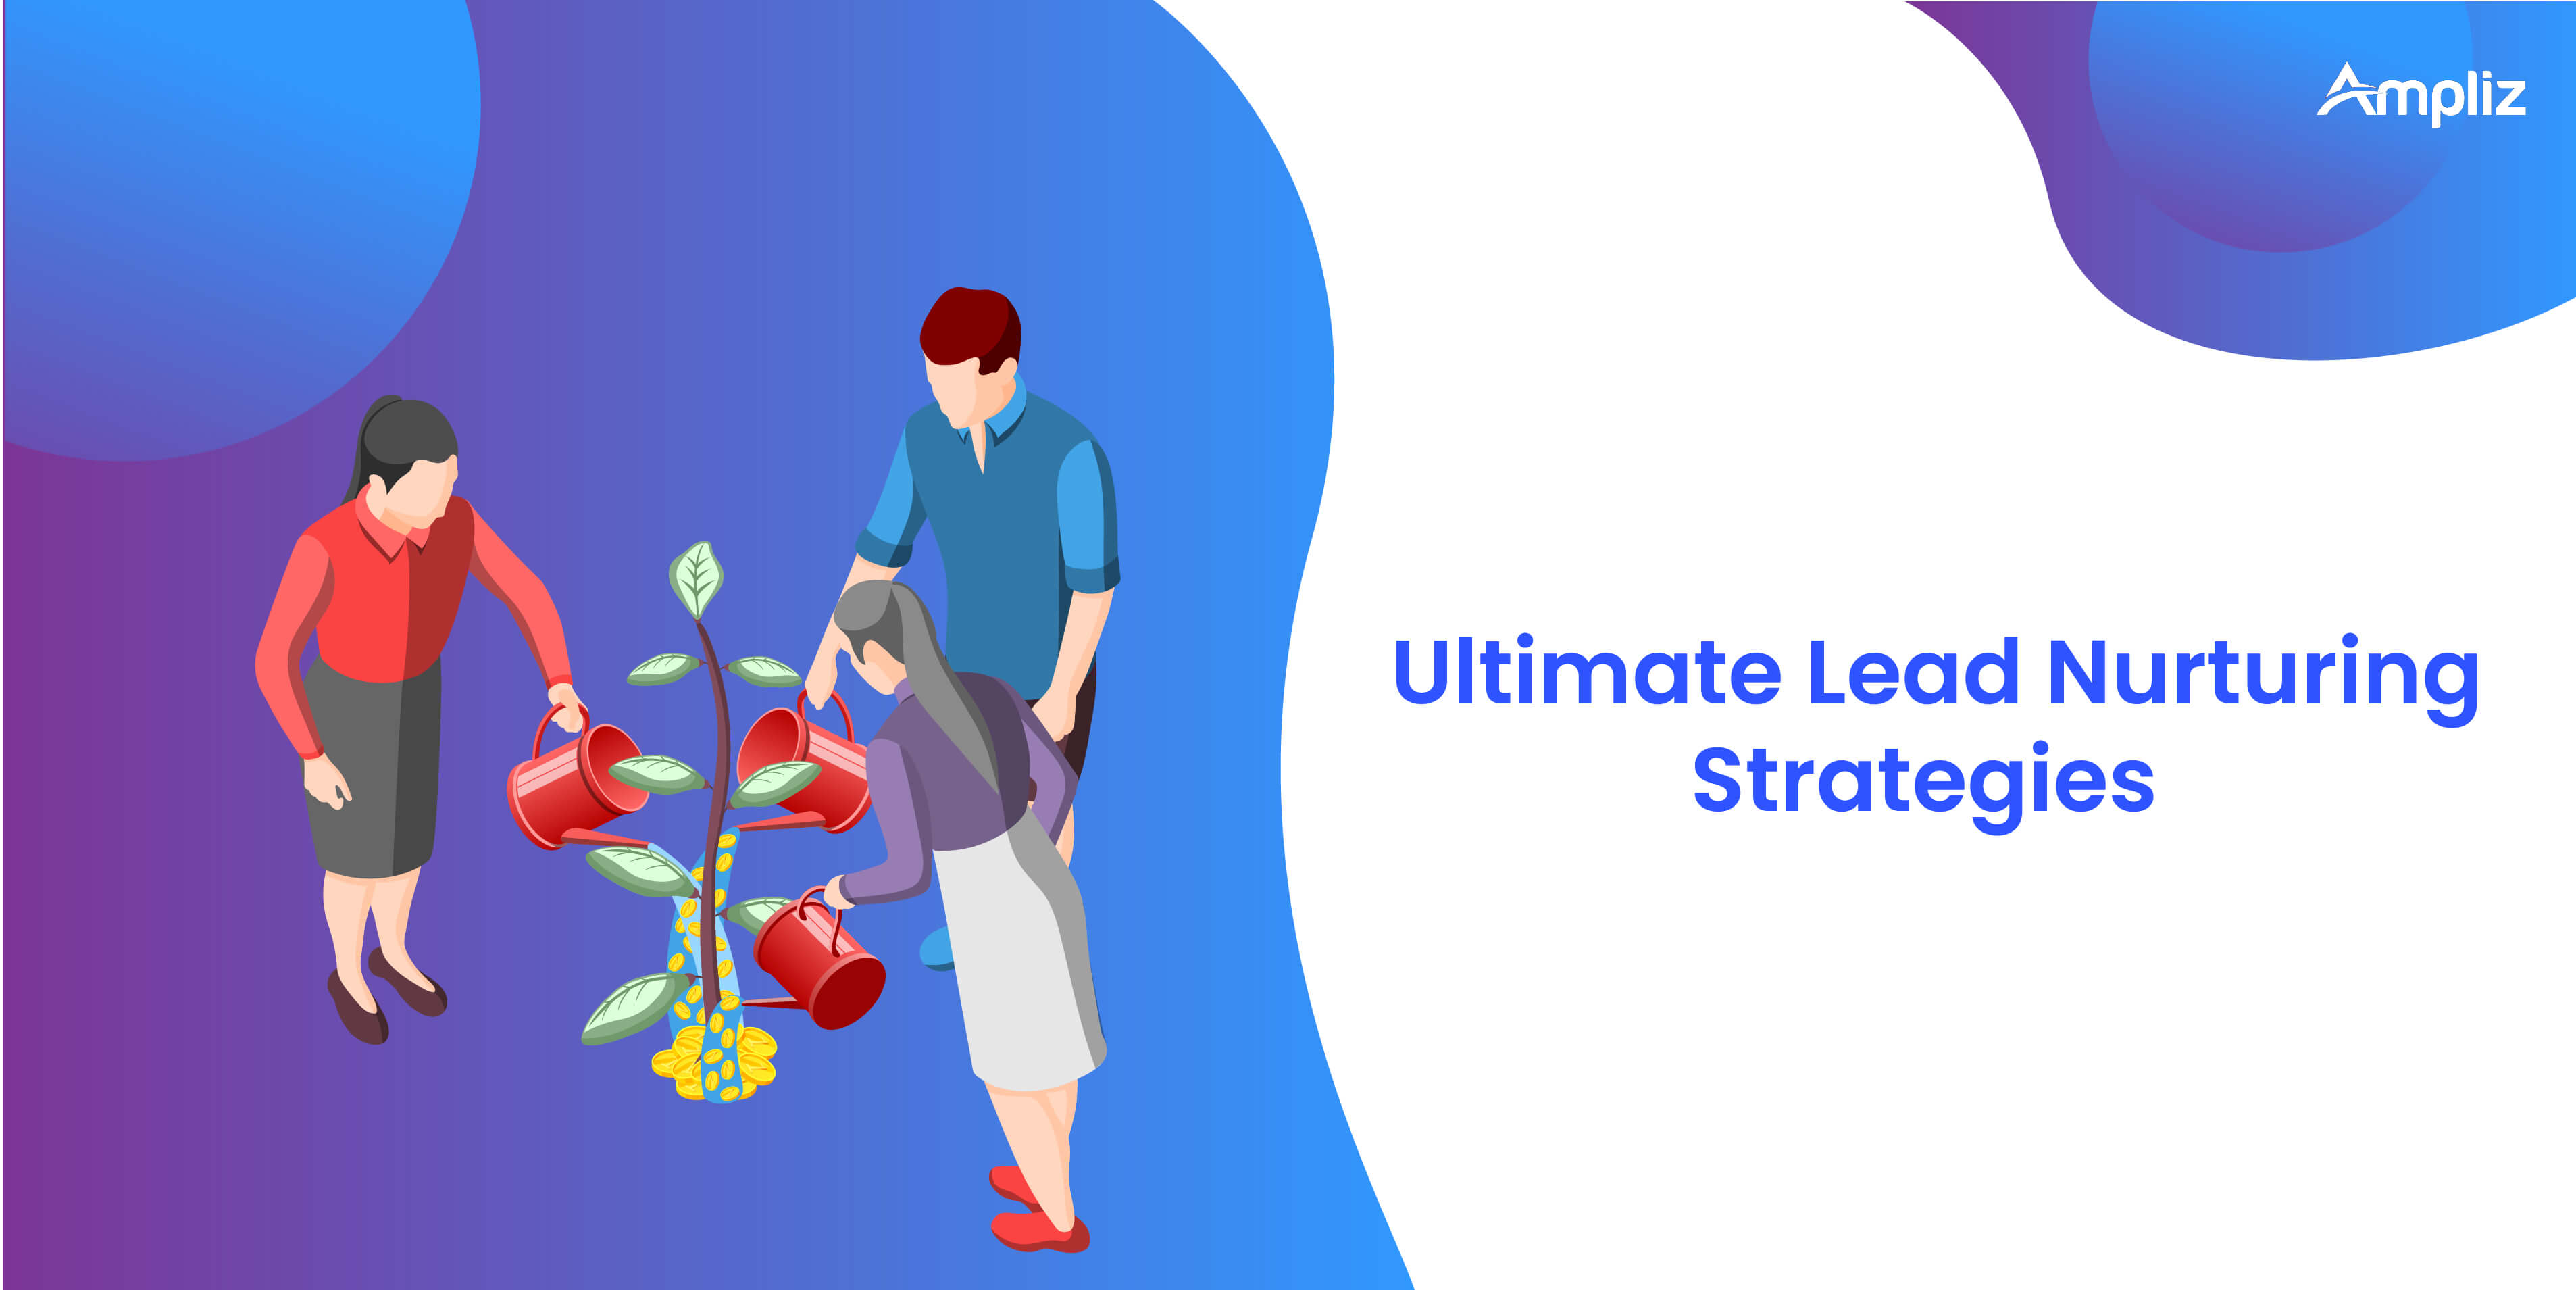 The ultimate lead nurturing strategies